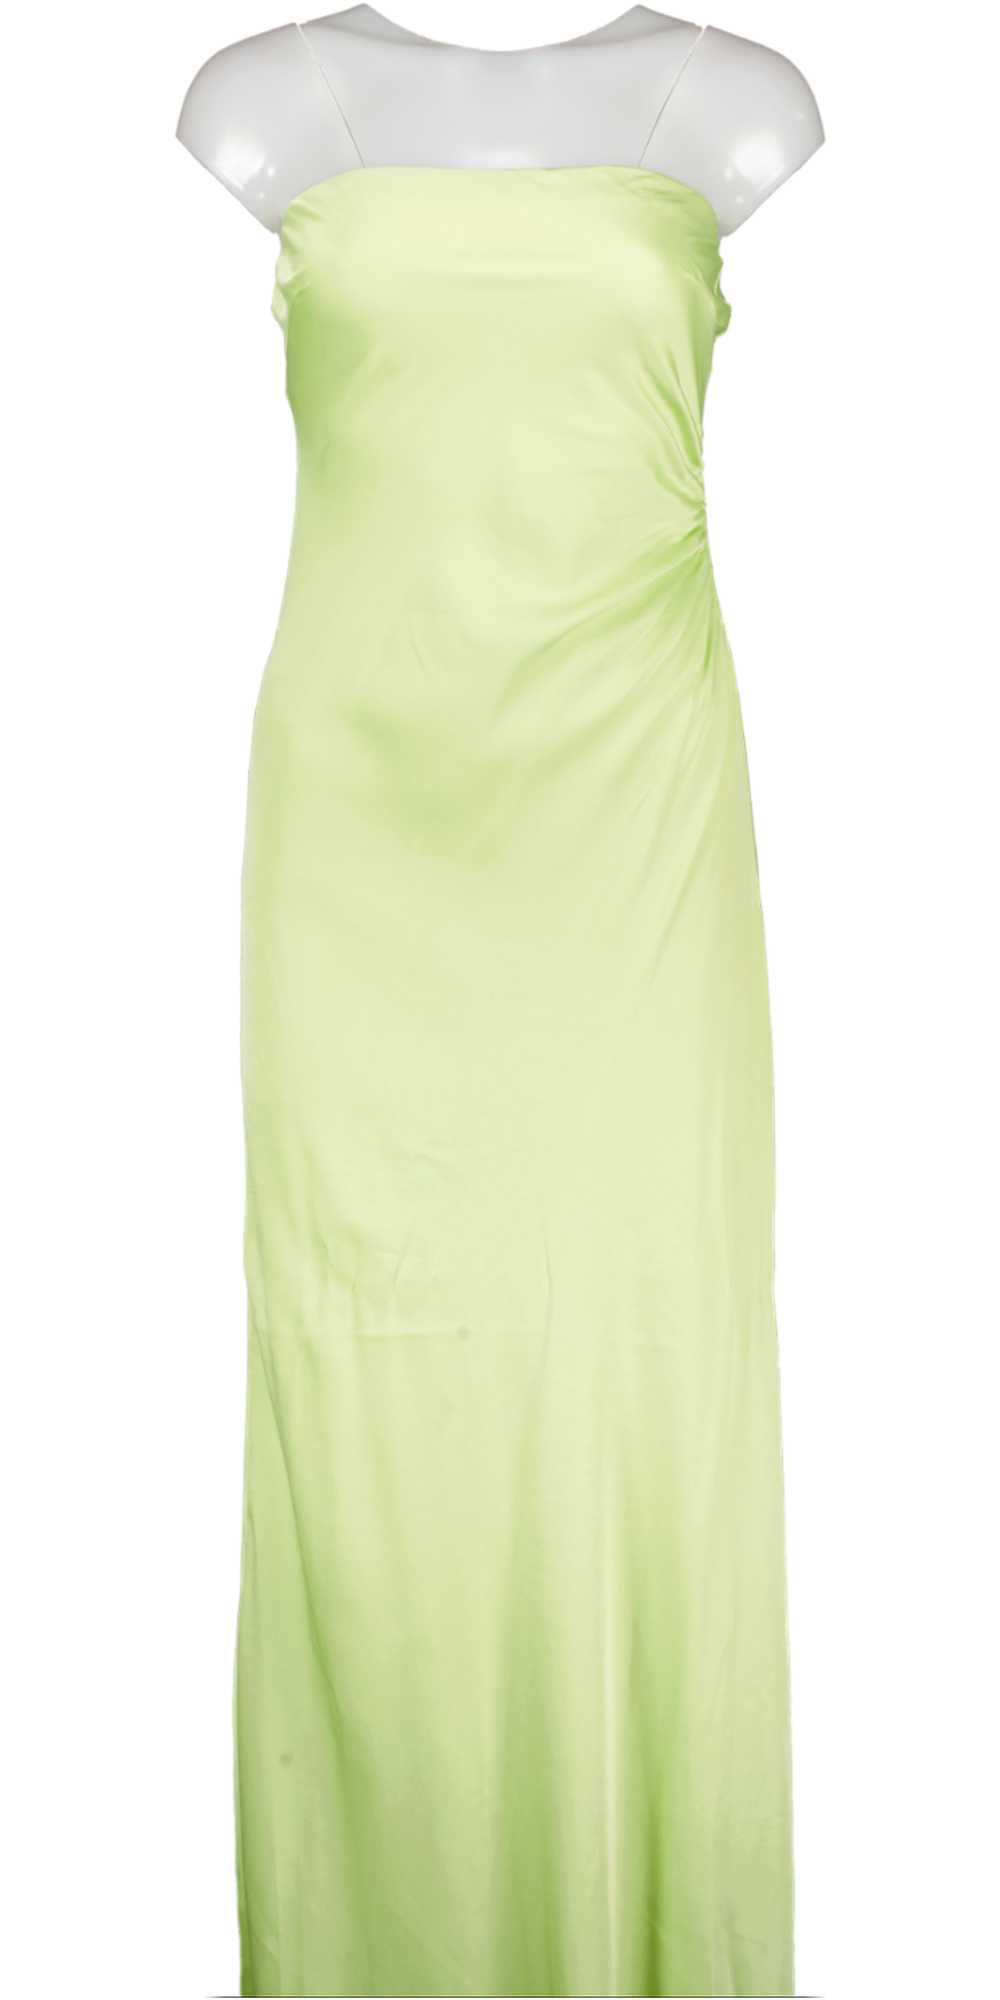 FOREVER NEW Green Avery Satin Strapless Dress UK 8 - image 1